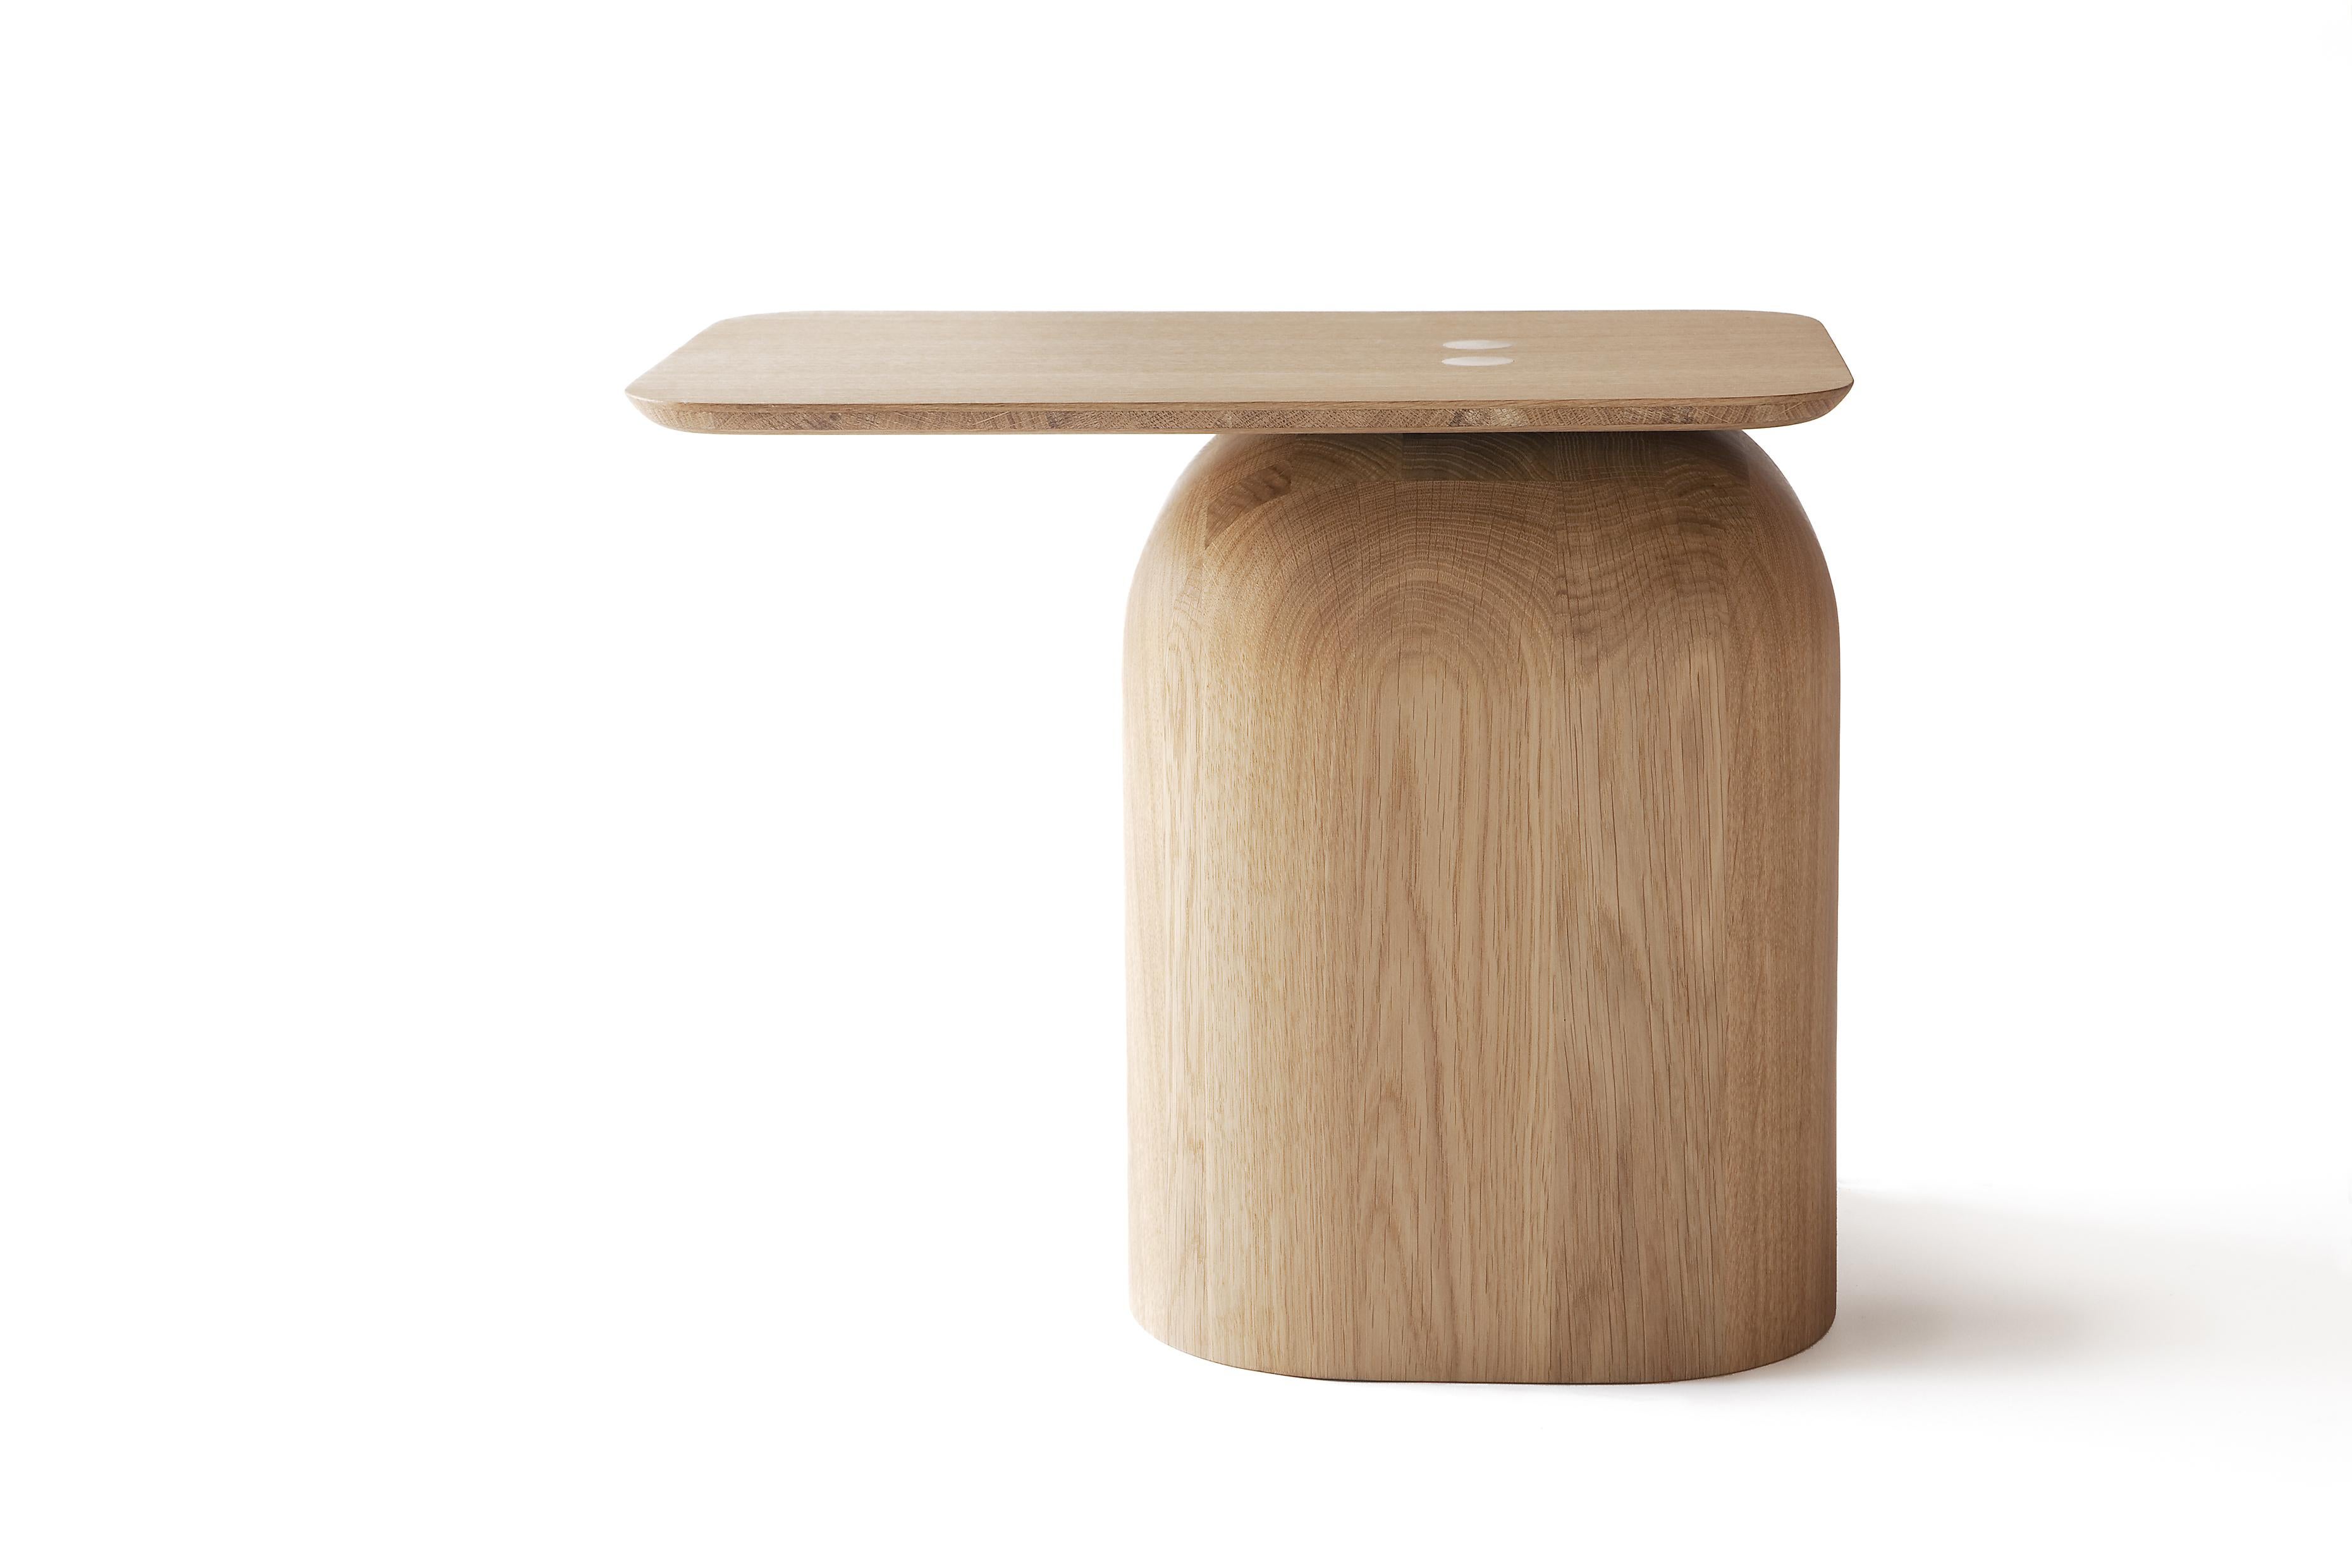 Das Tischset April wurde 2012 vom Schweizer Designer Alfredo Häberli entworfen. Der massive Holzsockel ist durch traditionelle Holzverbindungen harmonisch mit der Tischplatte verbunden. 

Die Tische sind aus verschiedenen Holzarten gefertigt: